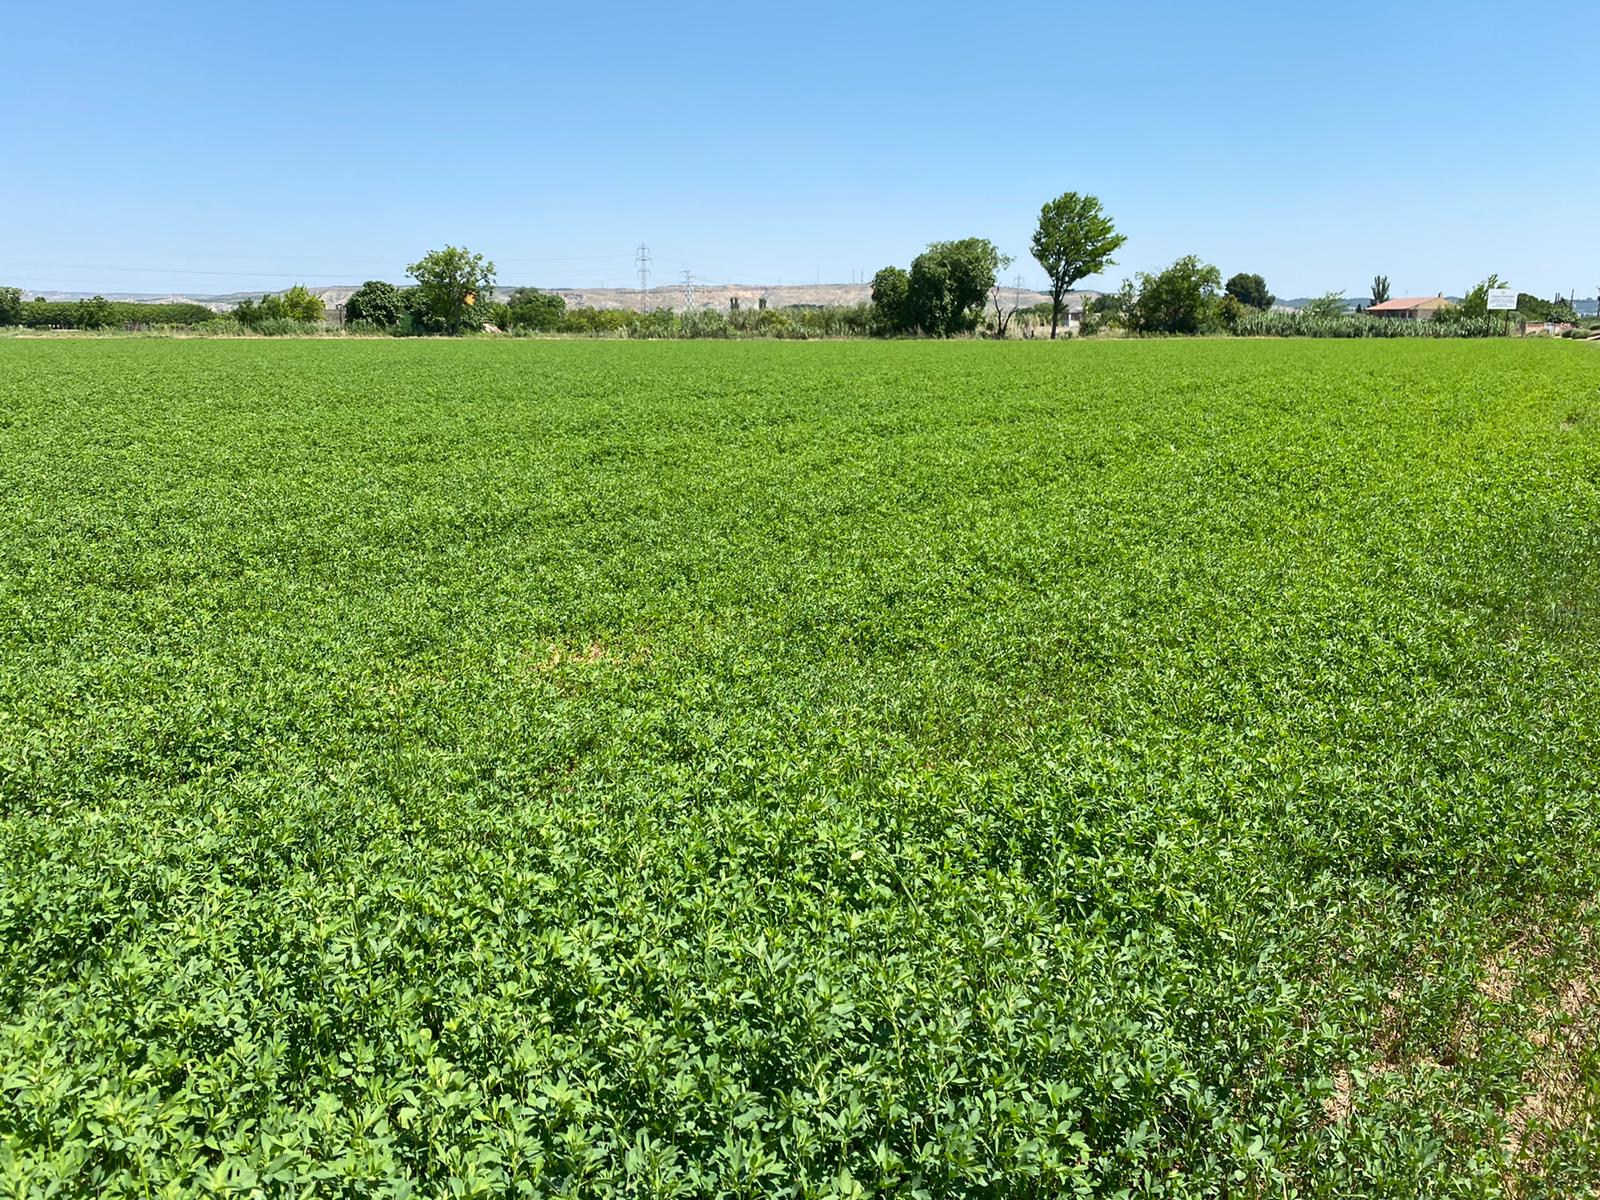 La producción de alfalfa deshidratada aumenta un 3,8% durante la campaña 2020/21